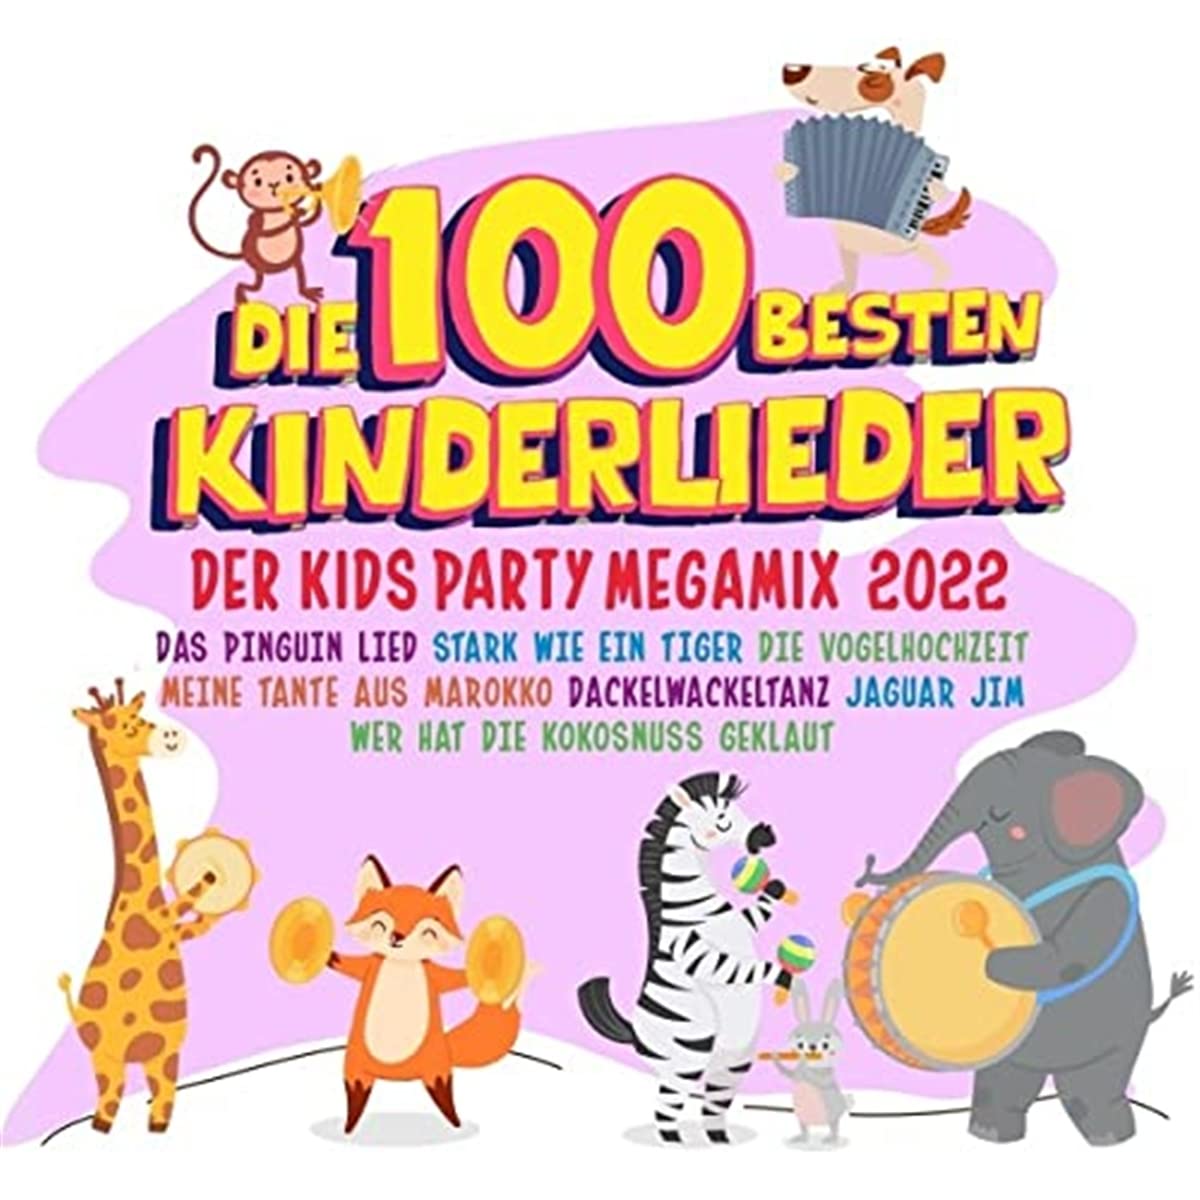 Die 100 Besten Kinderlieder 2022